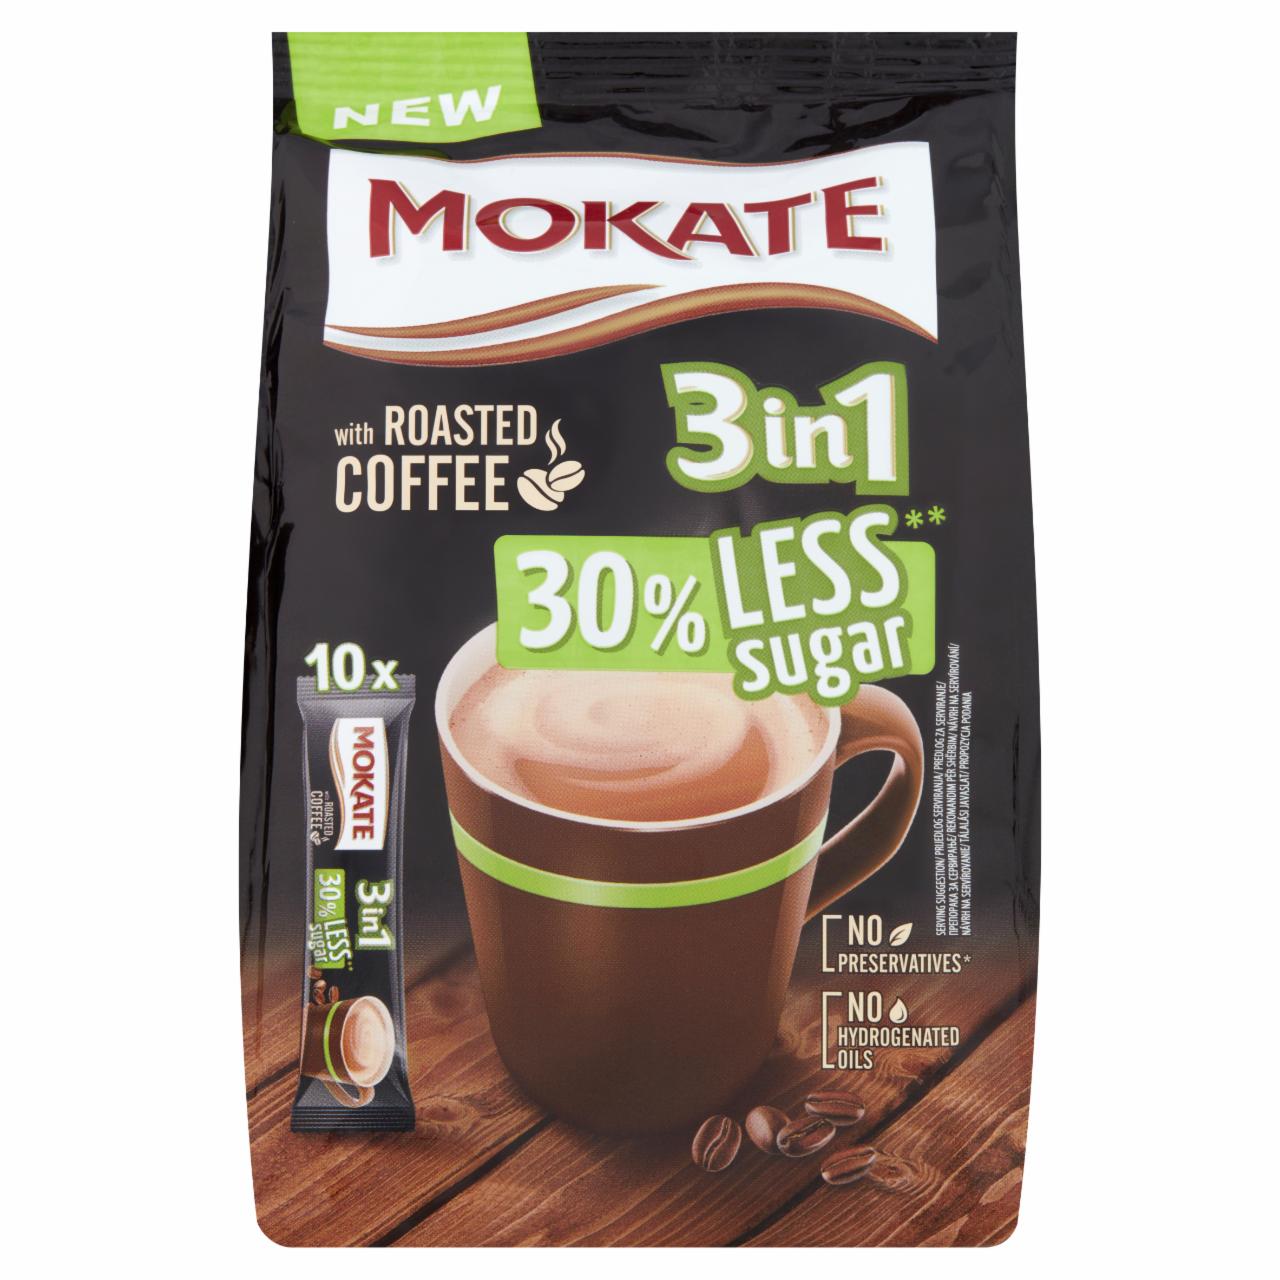 Képek - Mokate 3in1 azonnal oldódó kávéspecialitás csökkentett cukortartalommal 10 x 17 g (170 g)